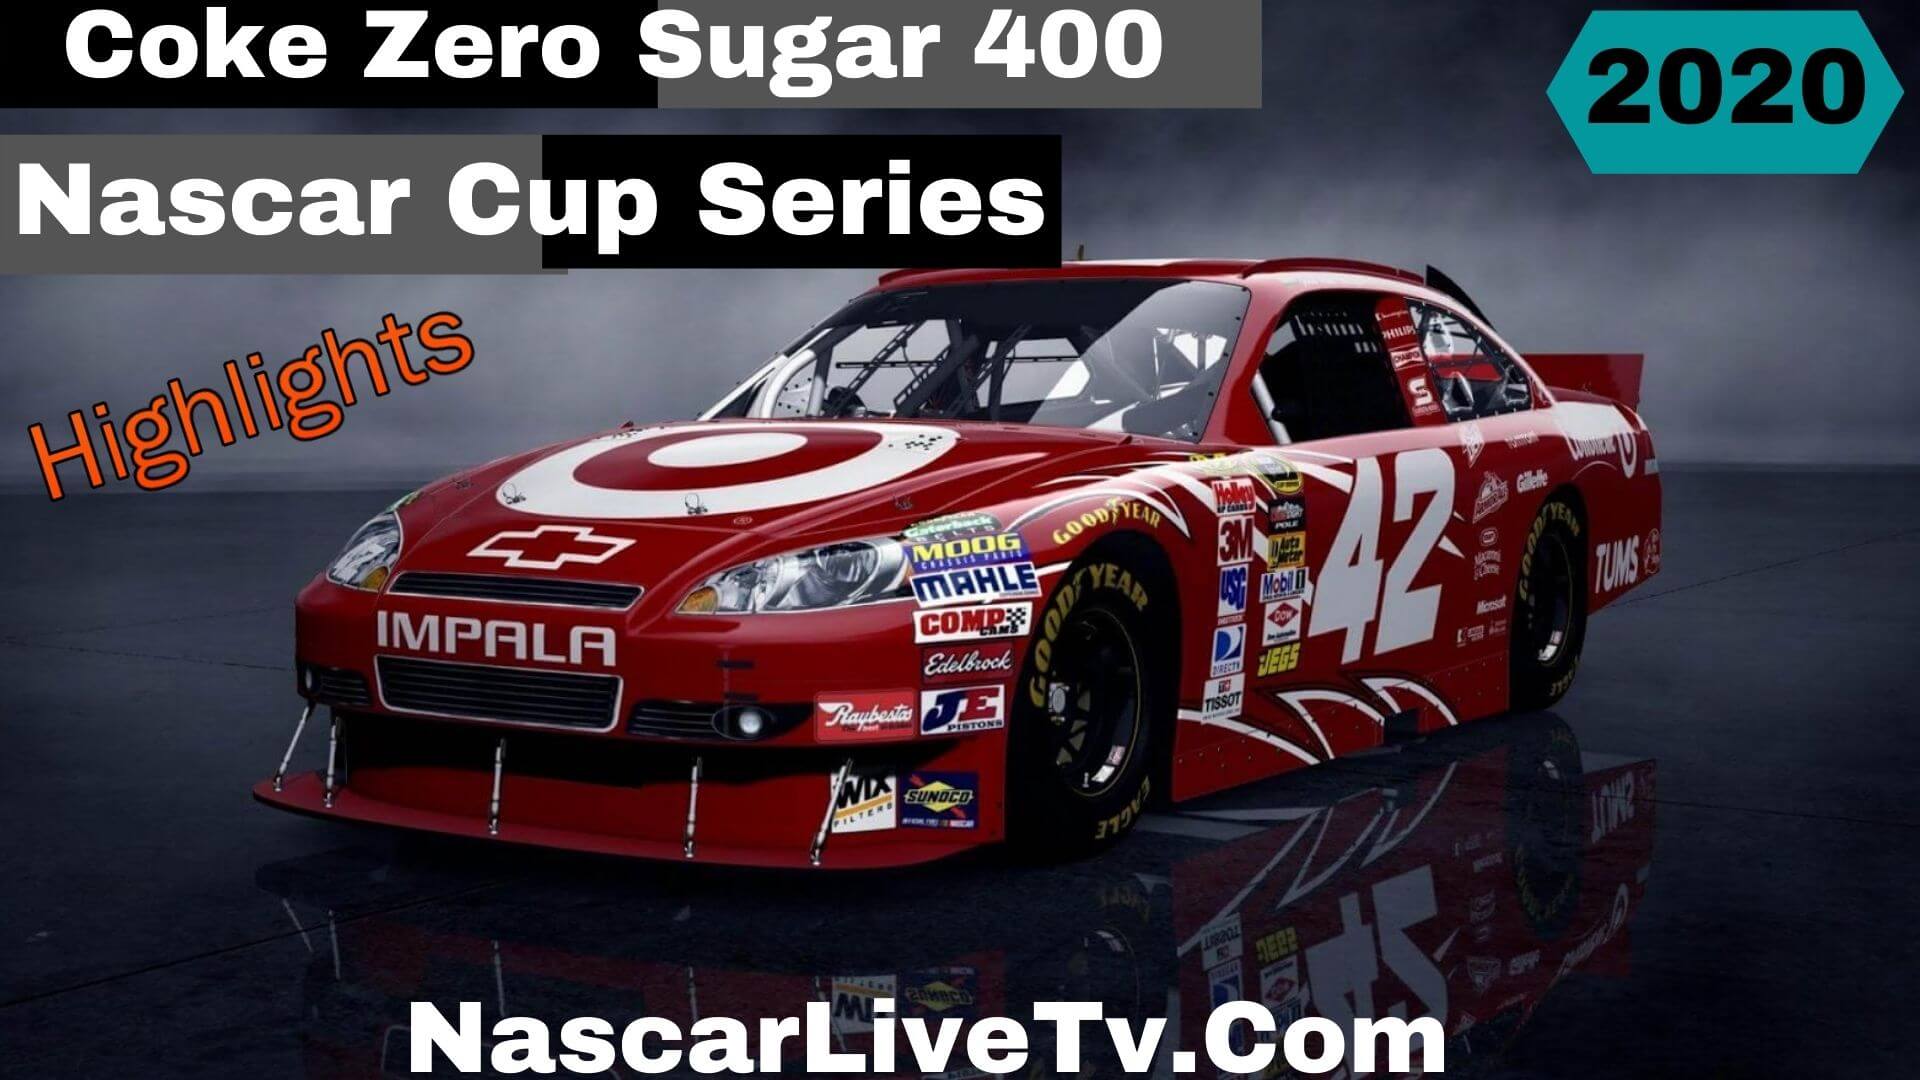 Coke Zero Sugar 400 Nascar Cup Series 2020 Highlights